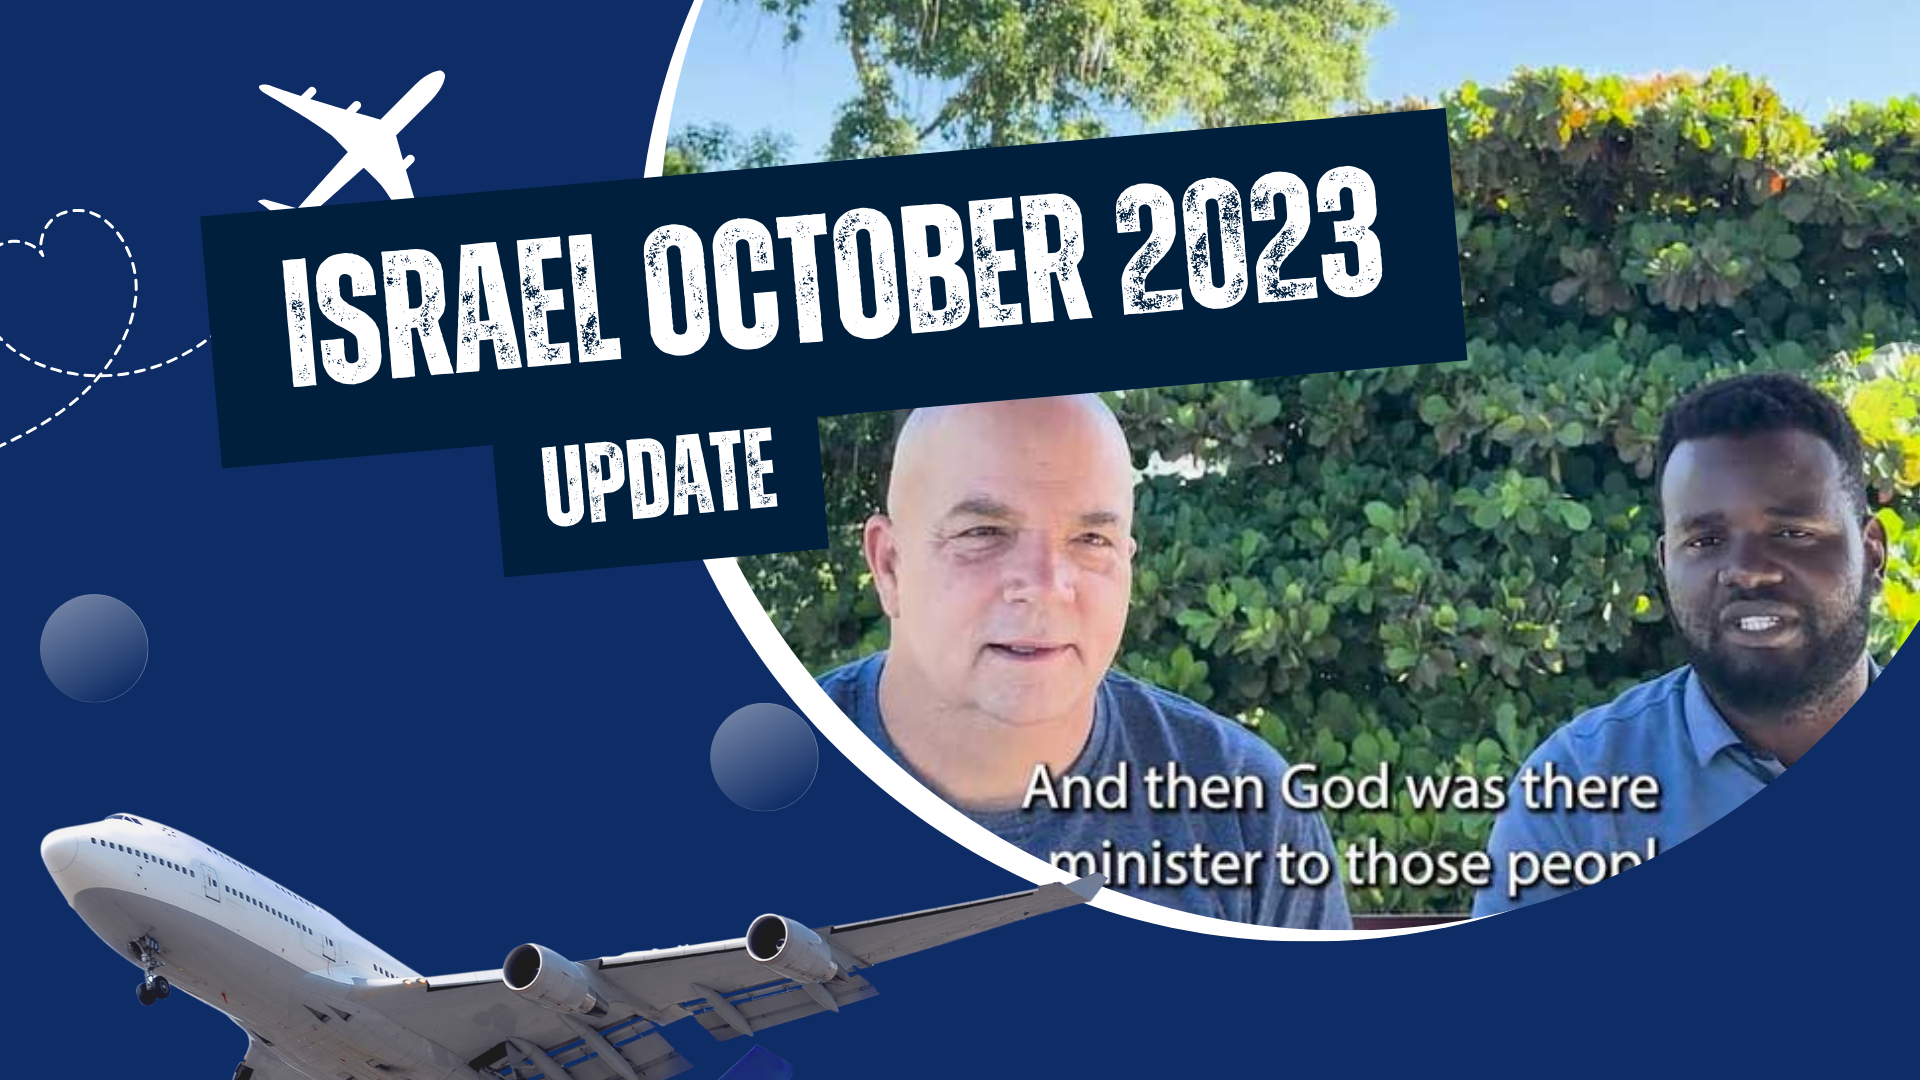 Israel October 2023 Update